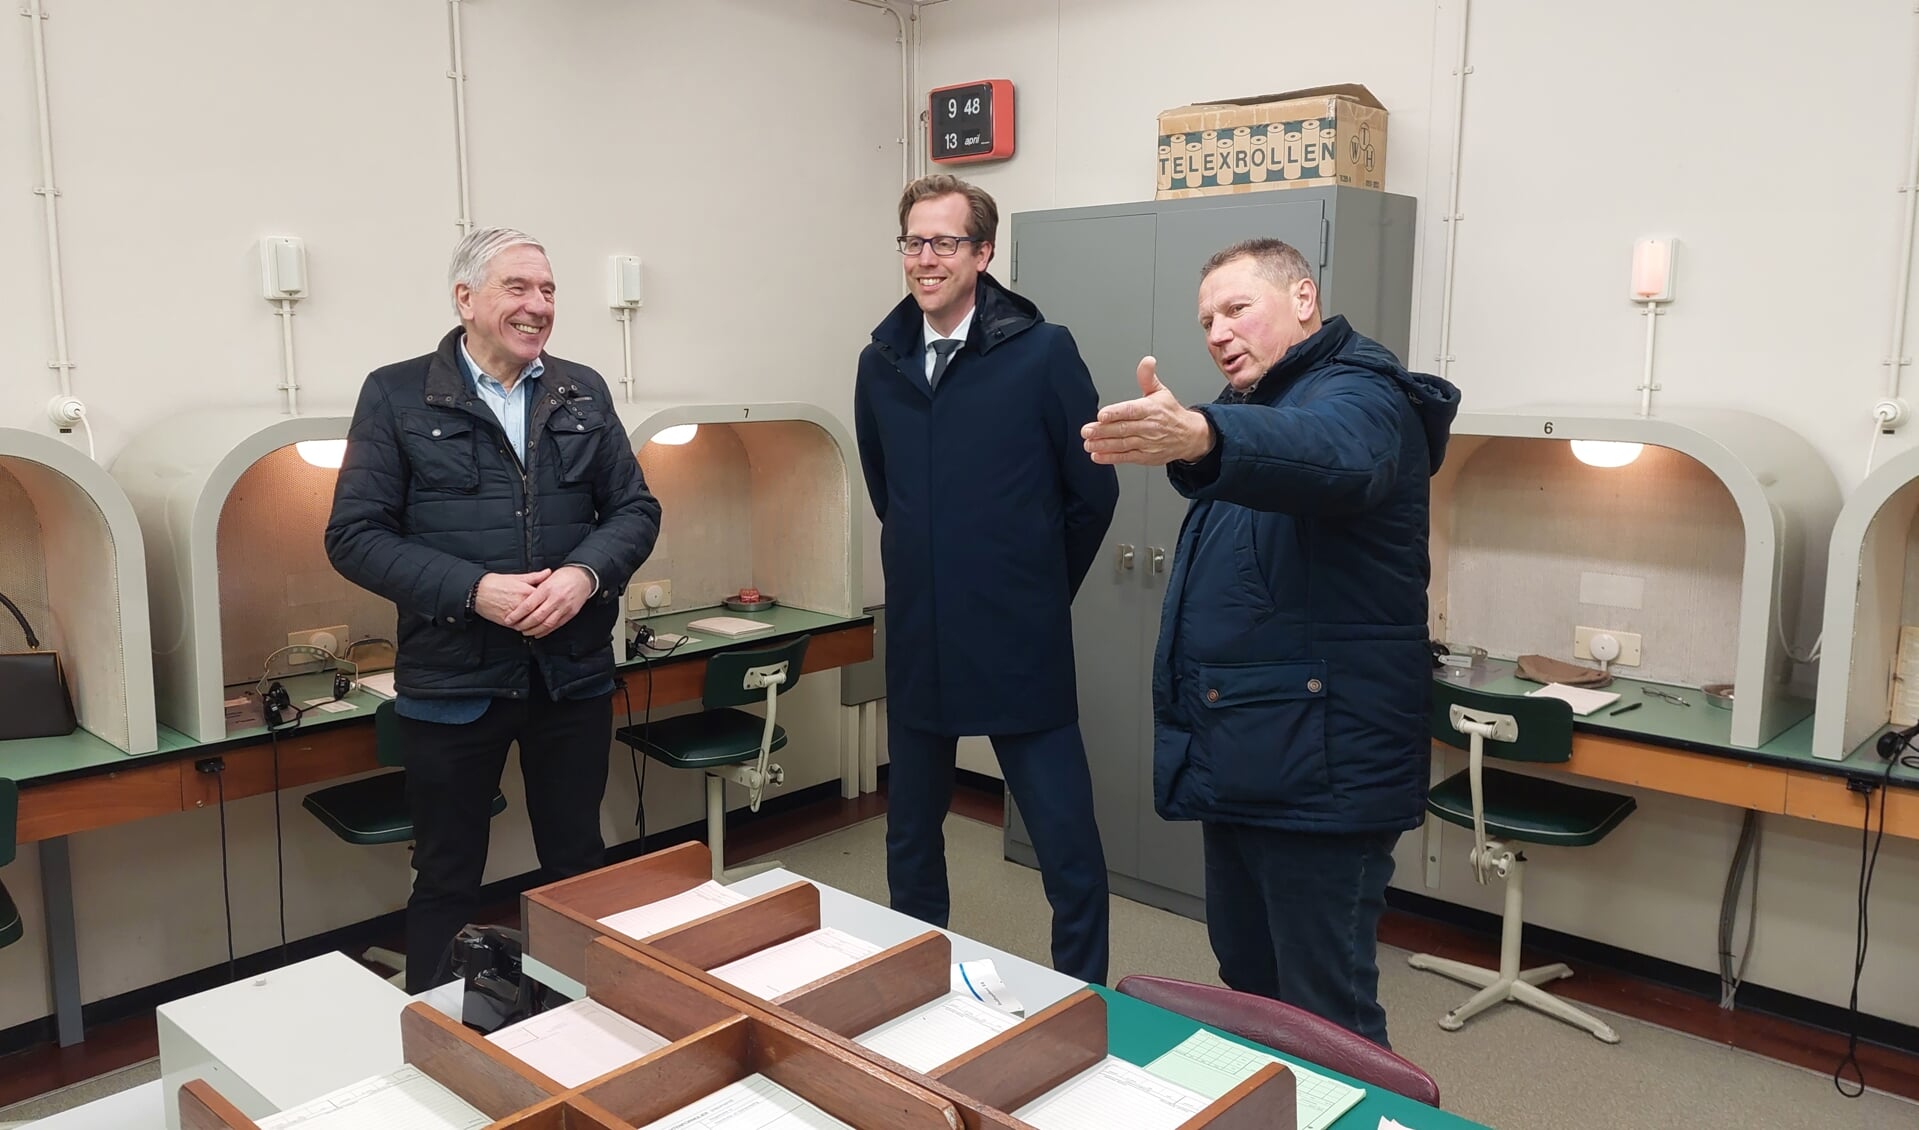 VVD'ers Rene van Hemert en Christophe van der Maat luisteren aandachtig naar Martien de Brabander, die met veel schwung wist te vertellen hoe het vroeger in het bunkercomplex er aan toe ging.